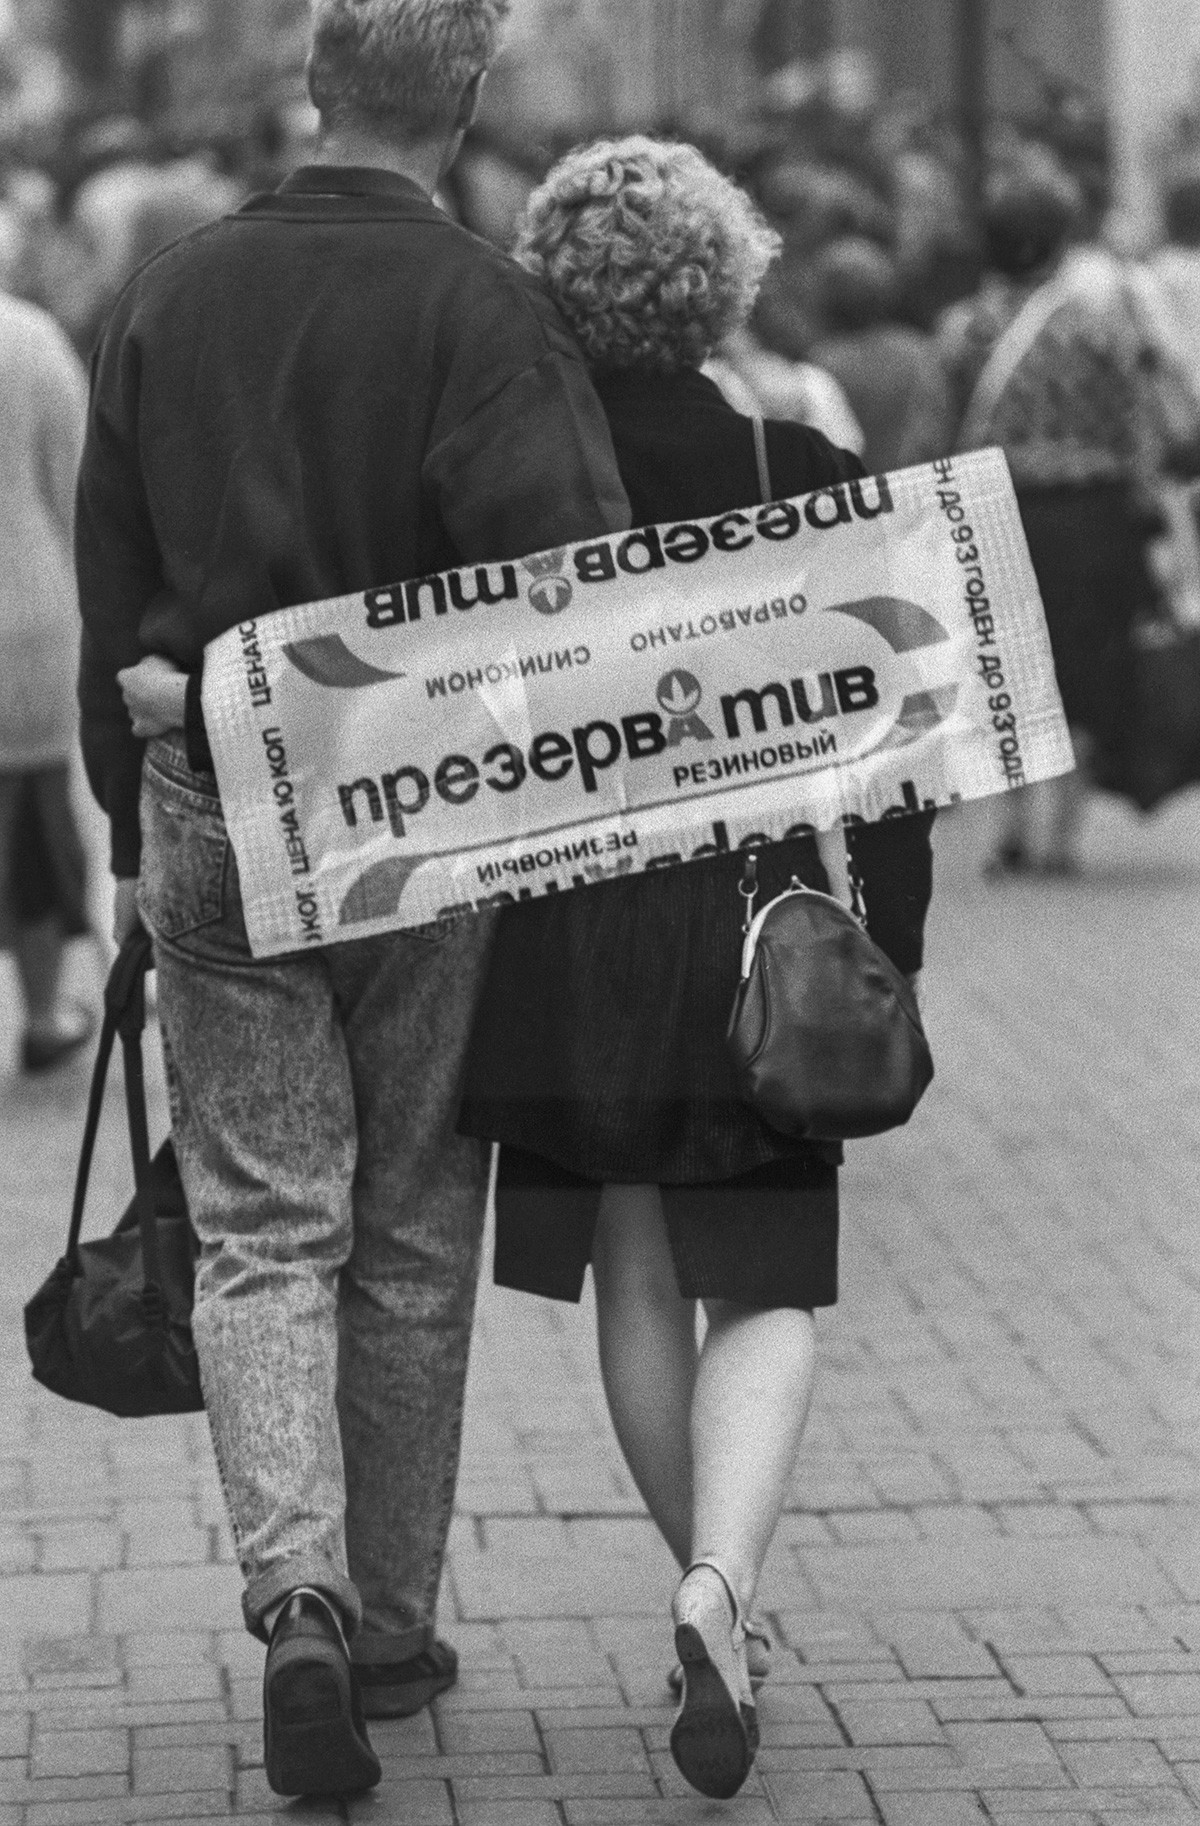 Rusija, Moskva, 5. rujna 1990. Ambalaža.

